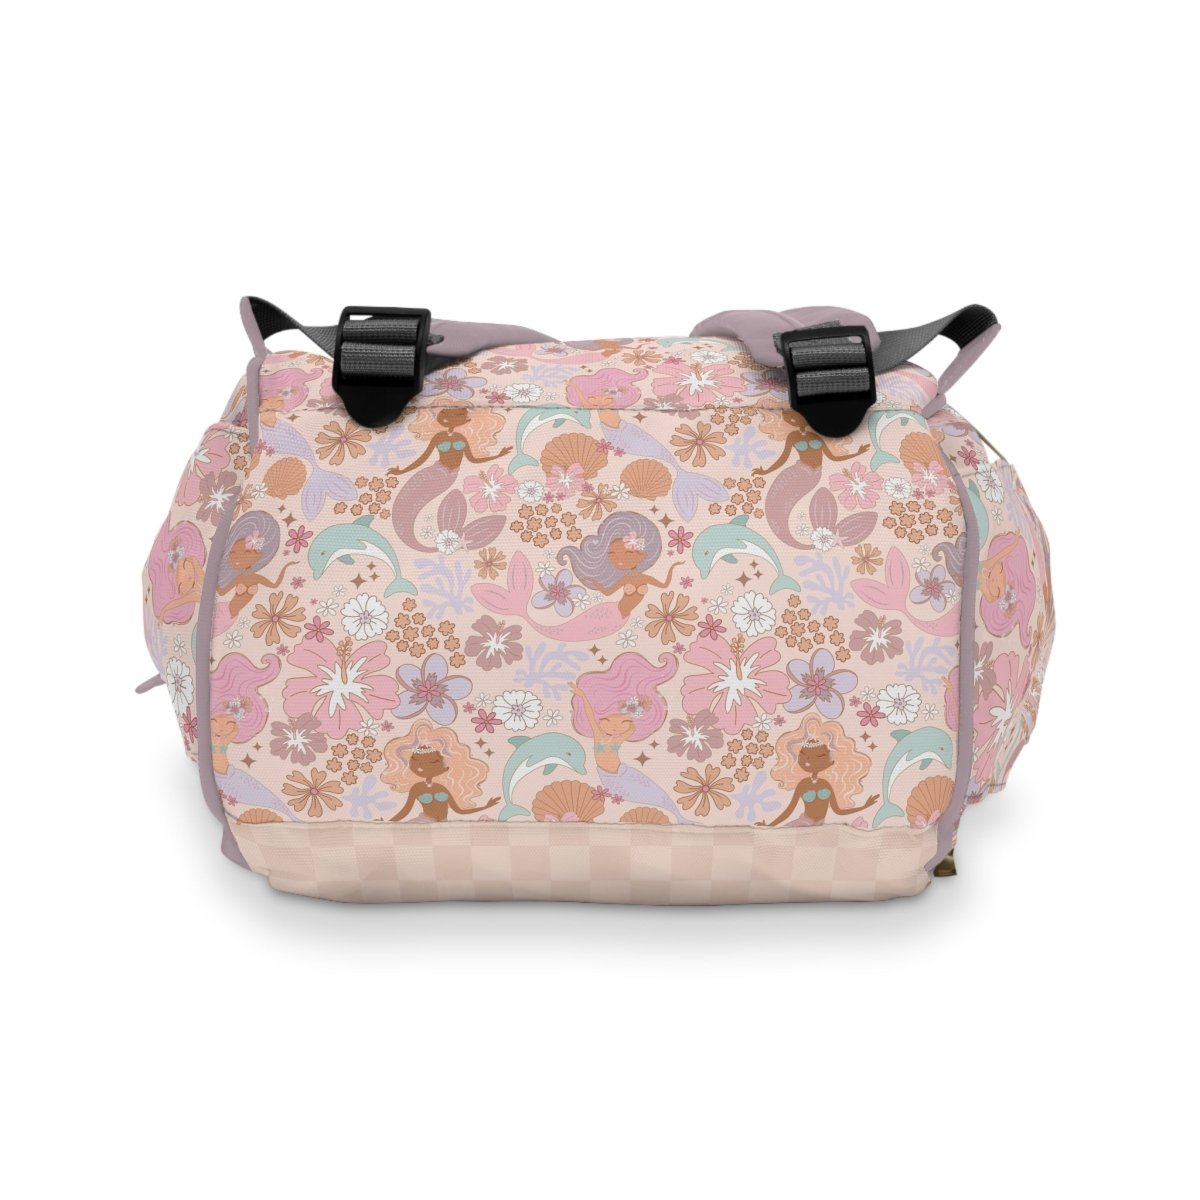 Boho Mermaids Personalized Backpack Diaper Bag - Diaper Bag